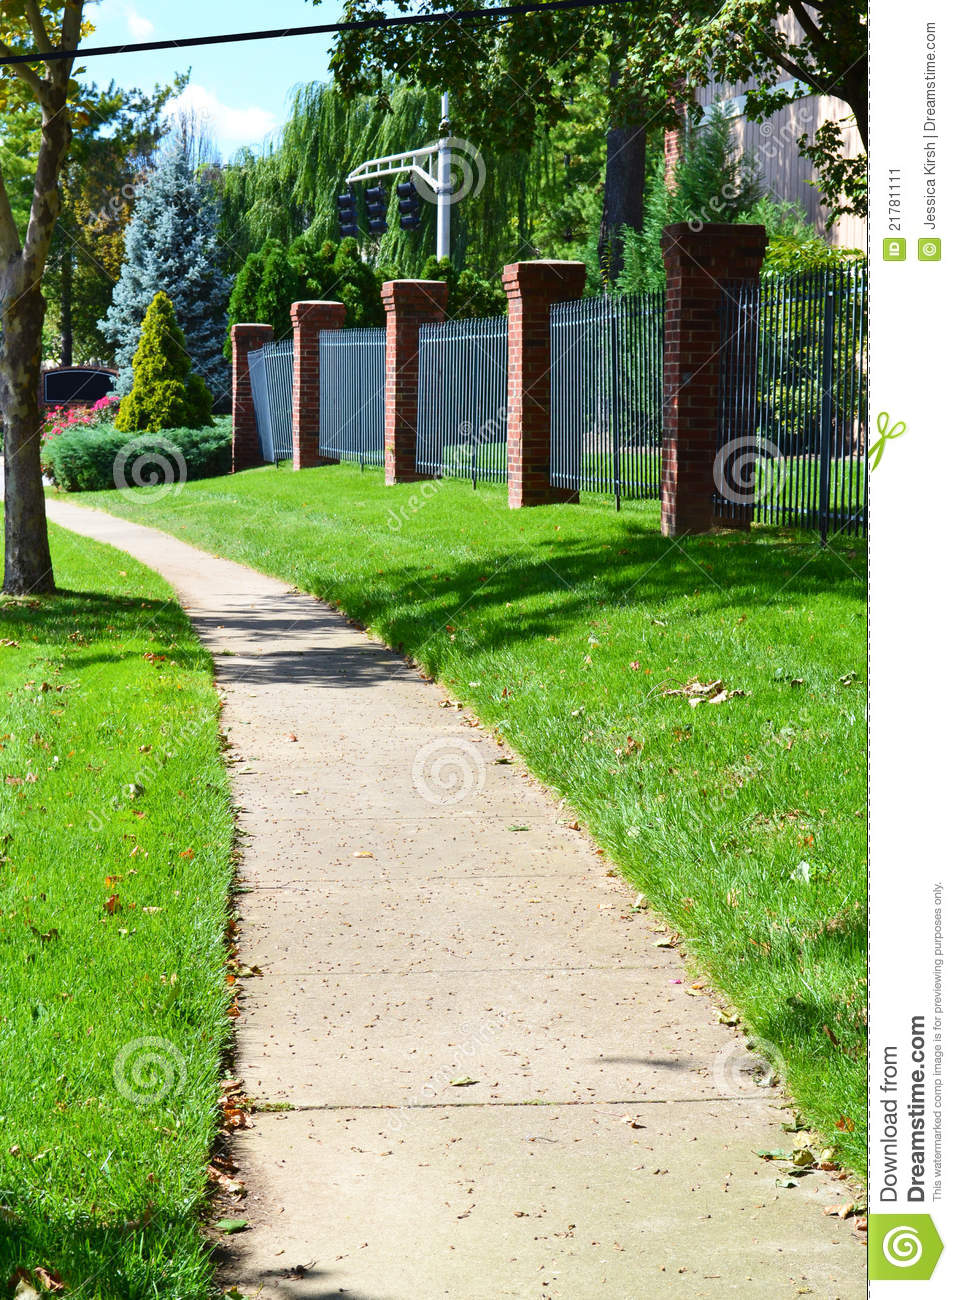 City Sidewalk Winds Through Neighborhood Stock Image   Image  21781111